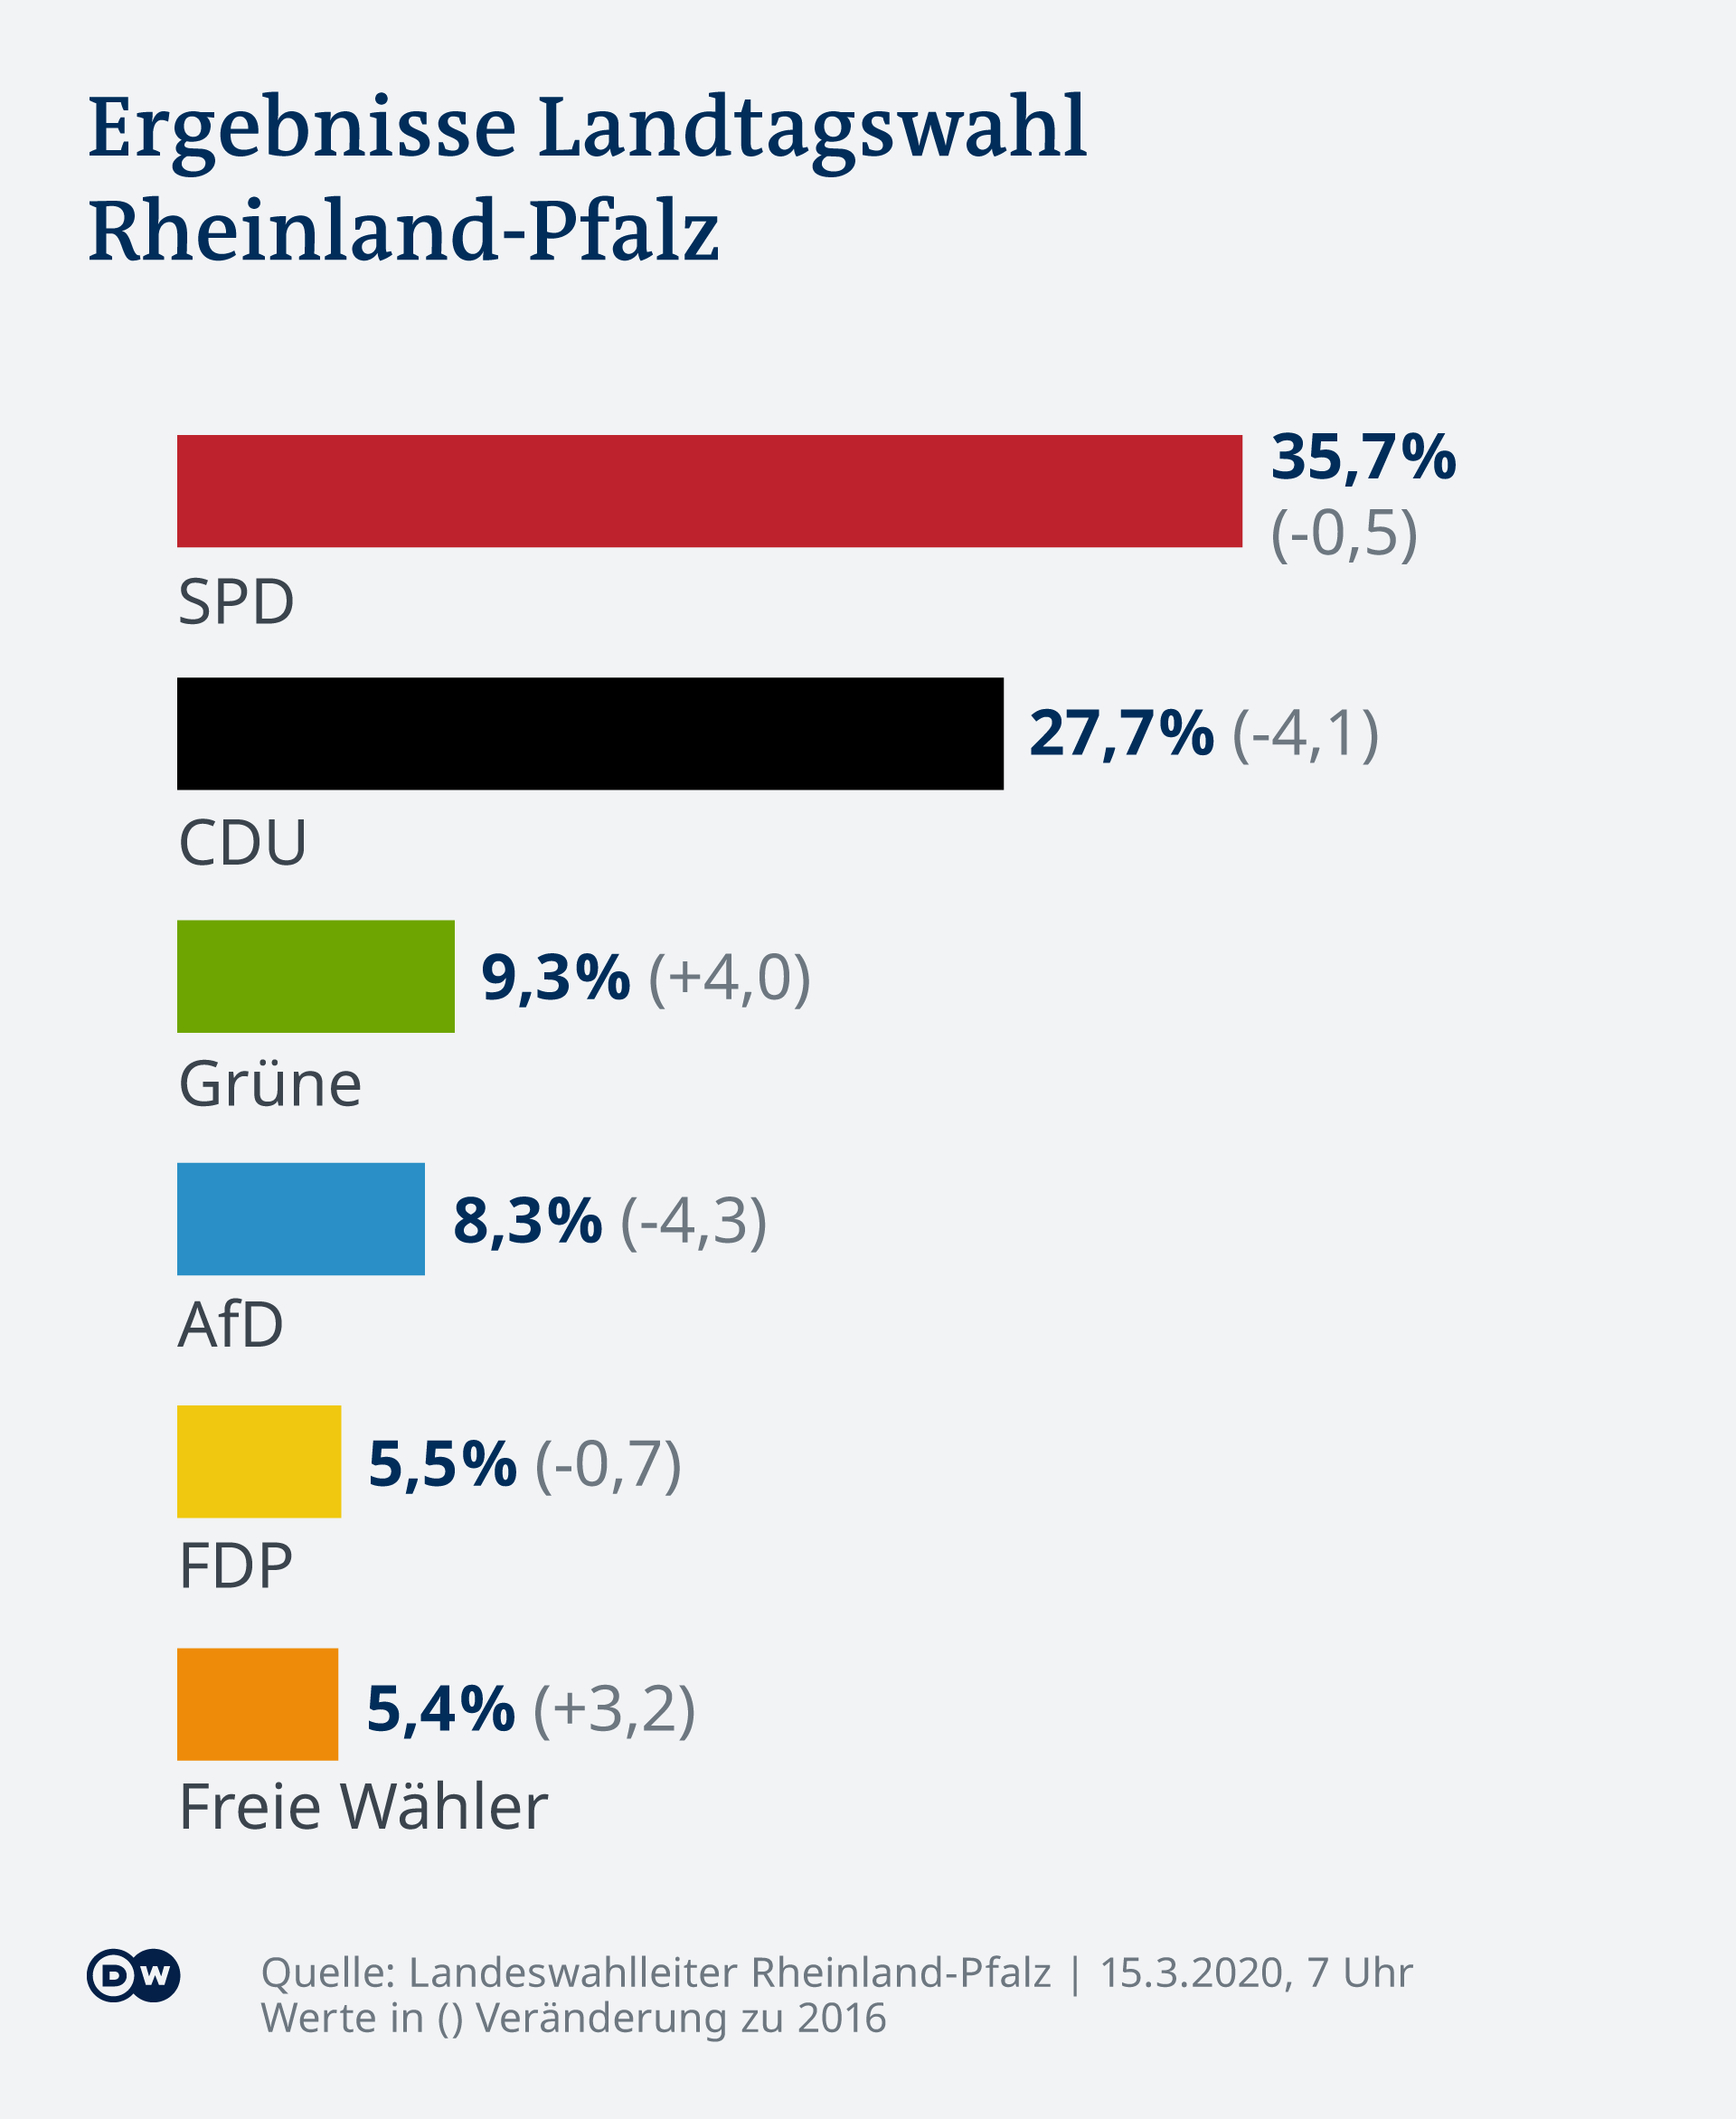 En Rhénanie-Palatinat, le SPD l'a emporté comme en 2016